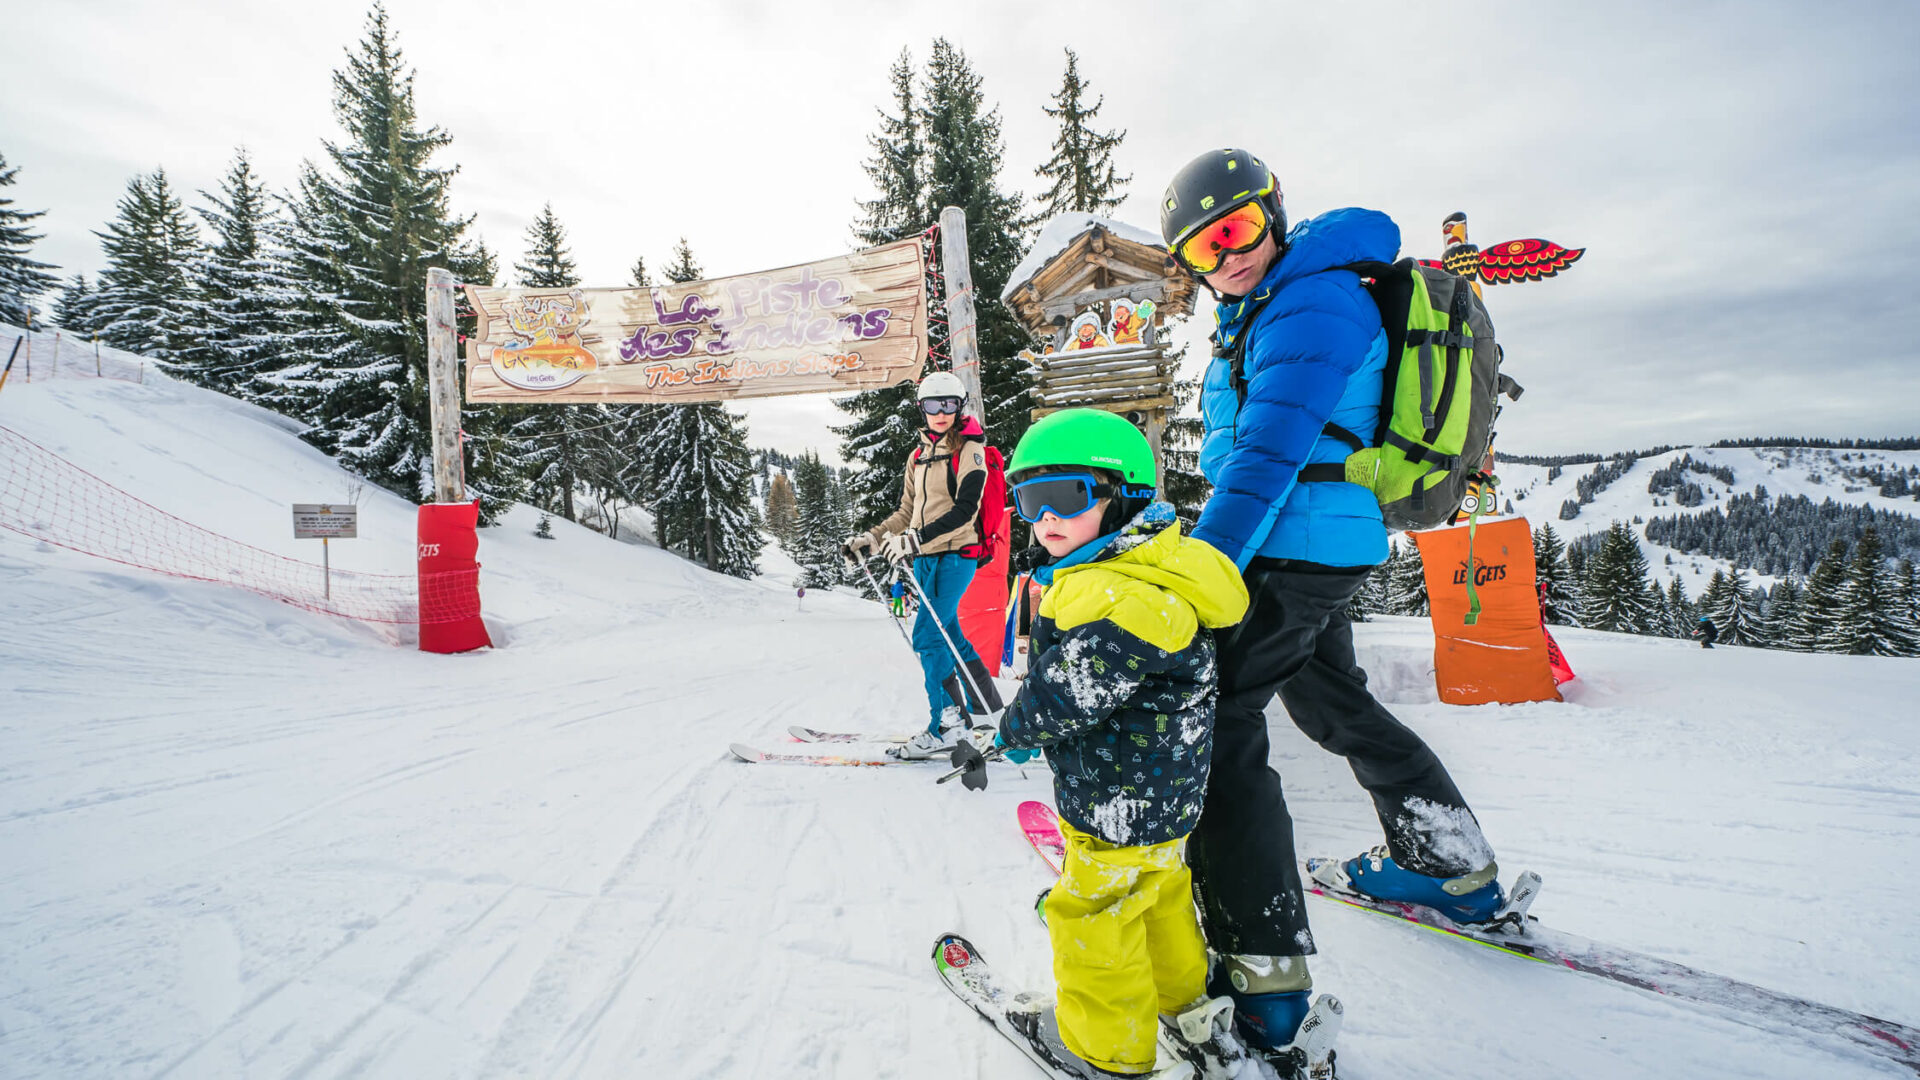 Famille en train de skier sur une piste adaptée aux enfants